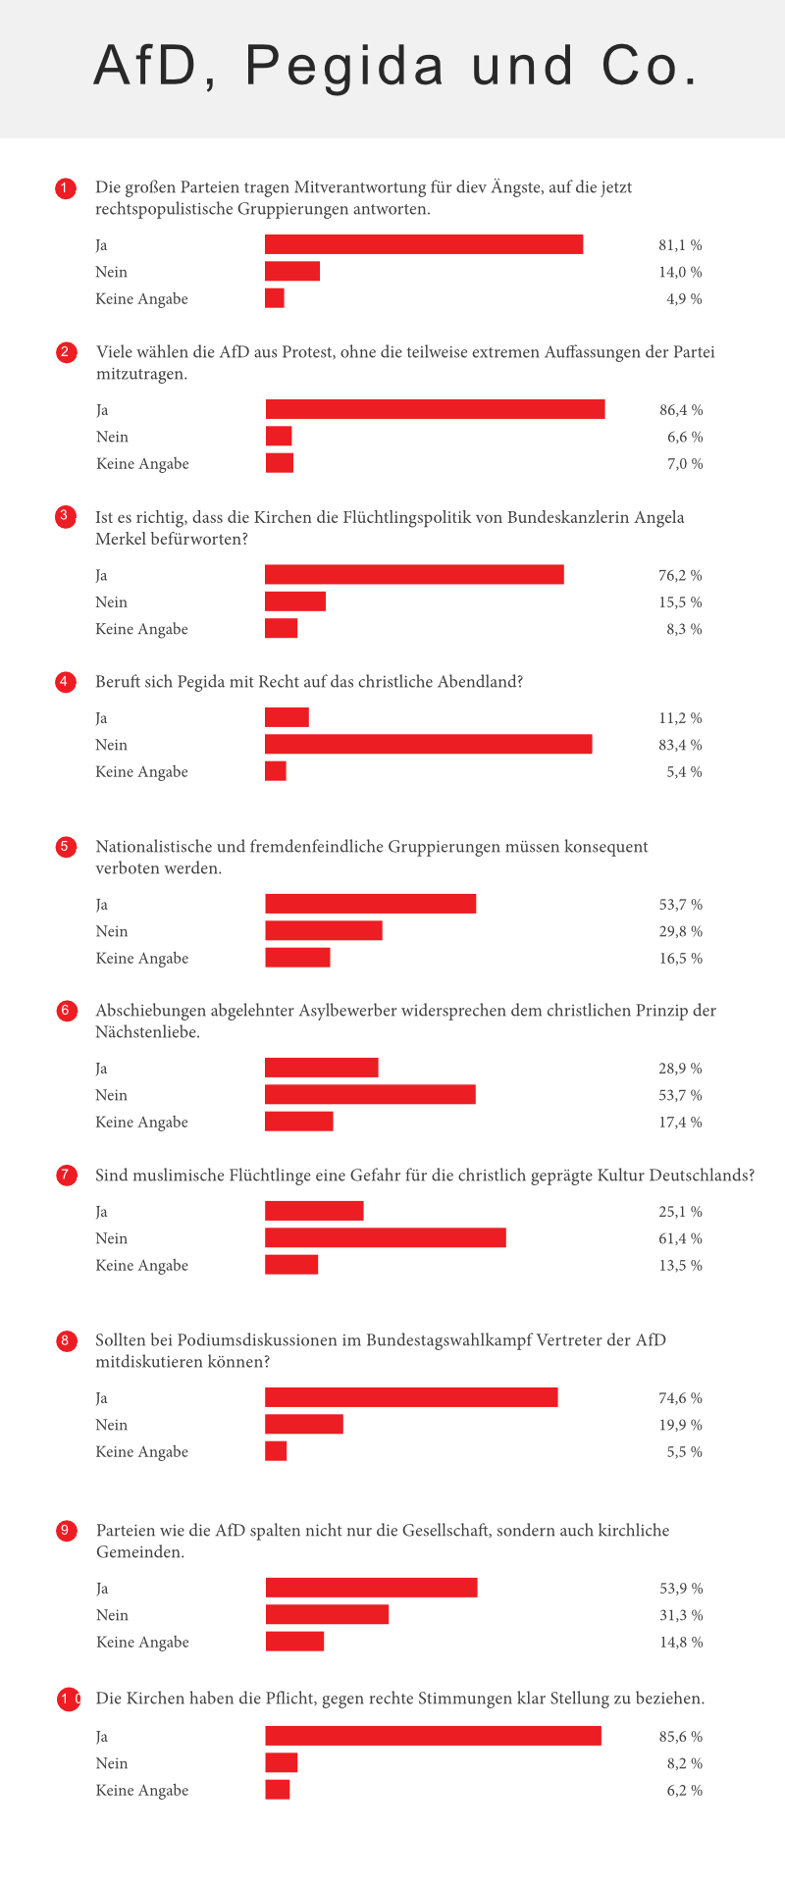 AfD, Pegida und Co.: Auswertung einer Umfrage der Herder Korrespondenz